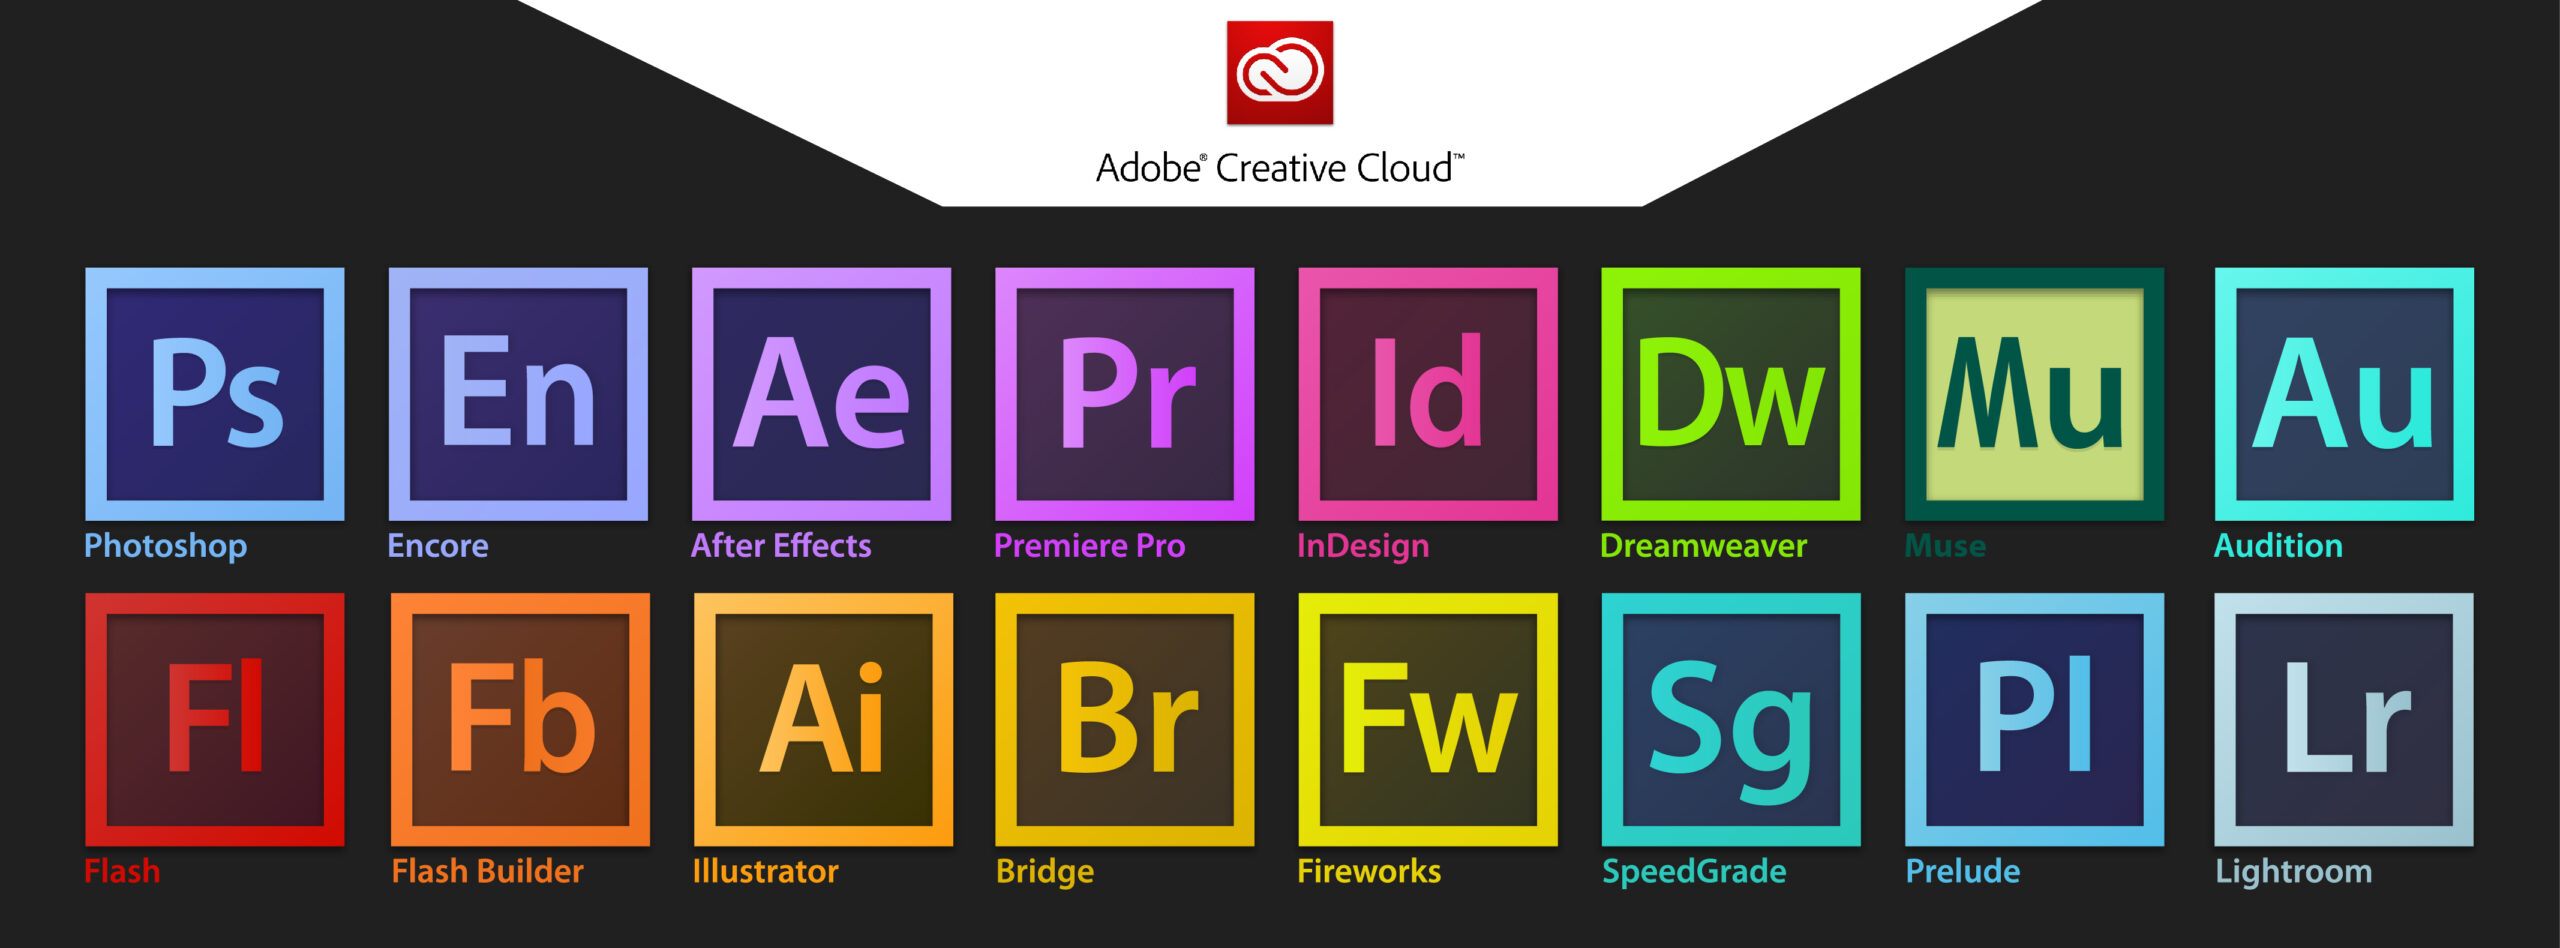 Adobe suite graphique - aio creation